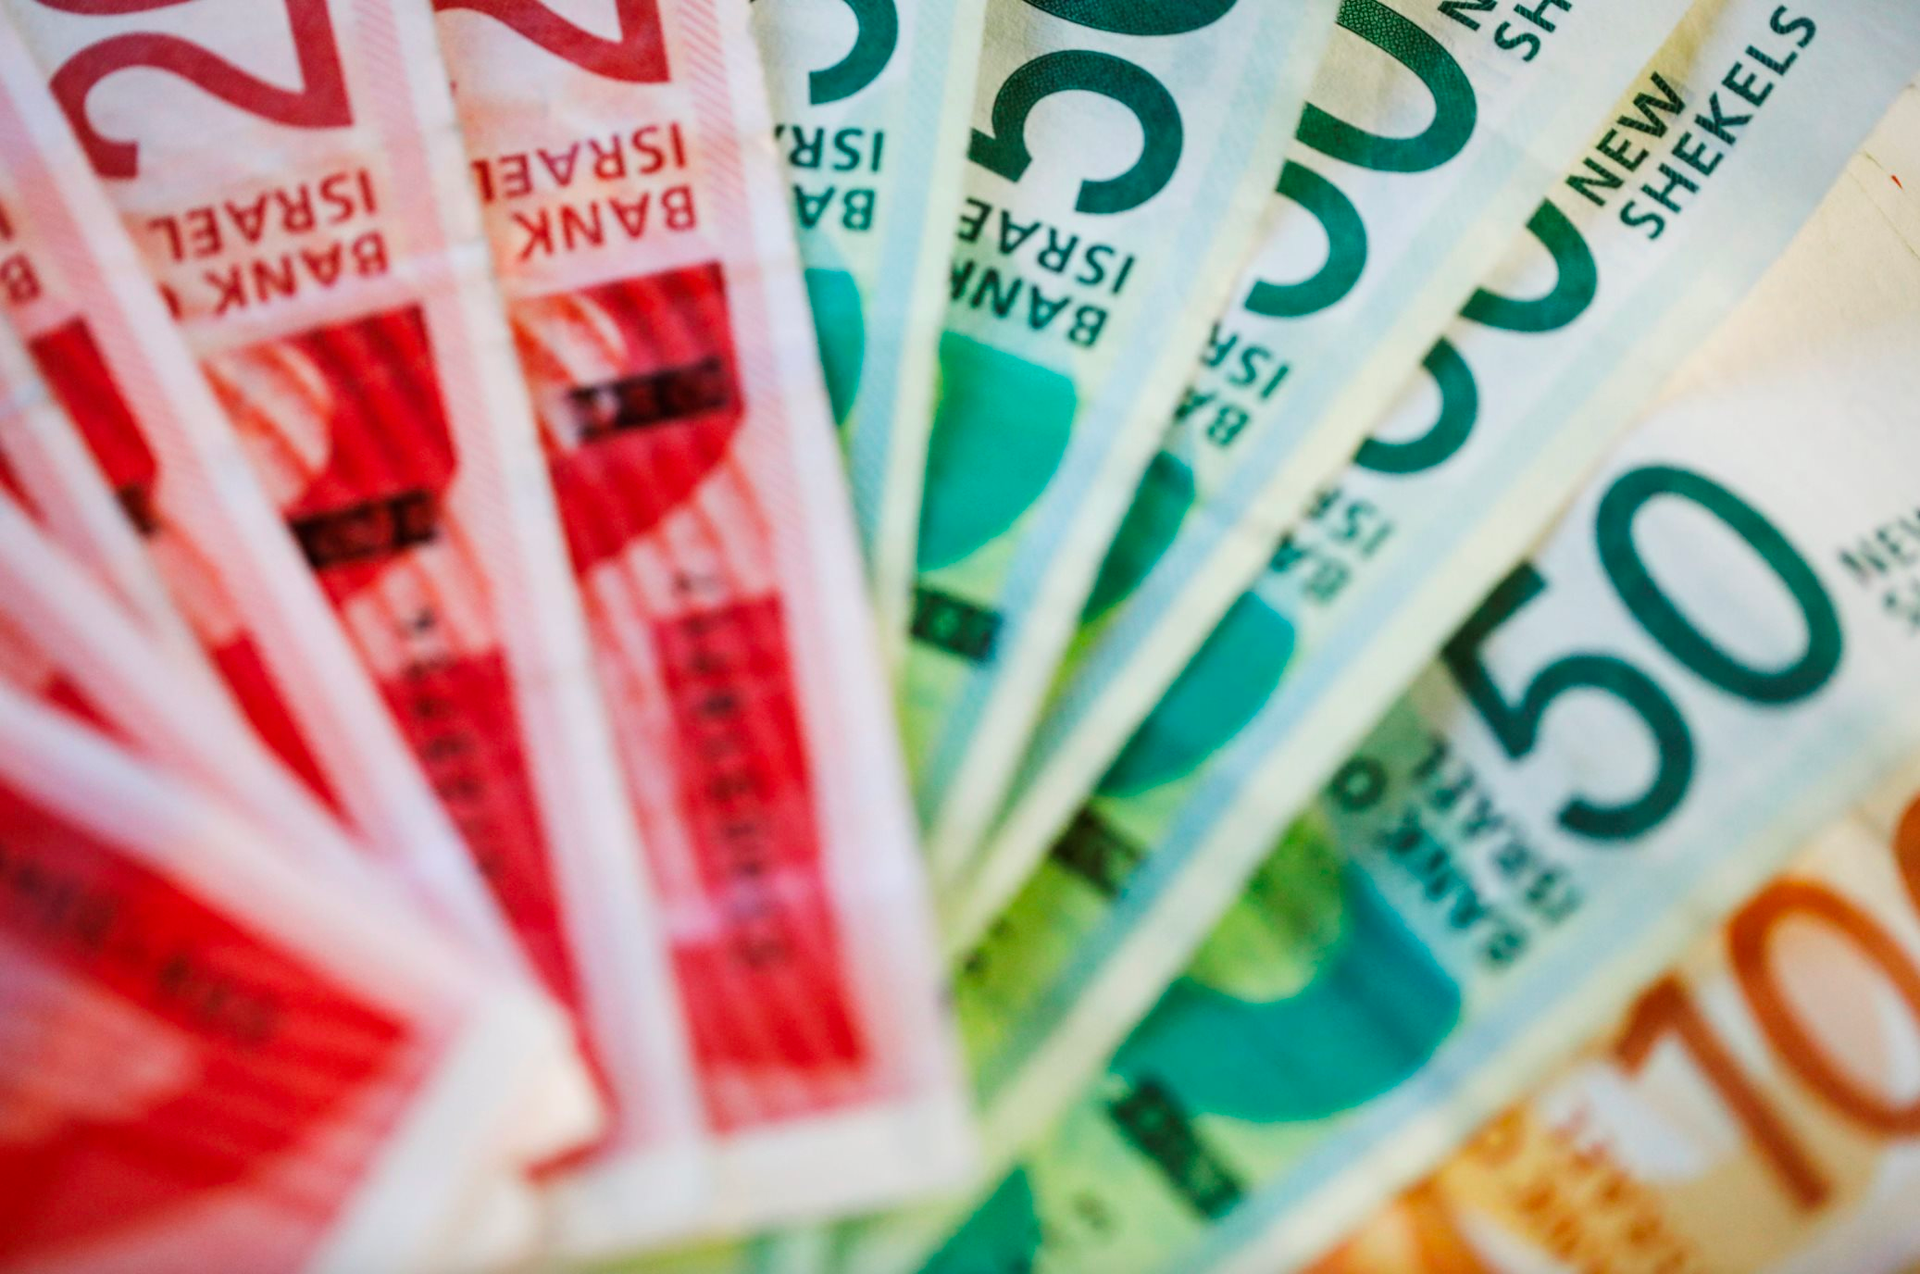 NHTW Israel chuẩn bị bán 45 tỷ USD ngoại tệ để hỗ trợ đồng nội tệ đang lao dốc mạnh 